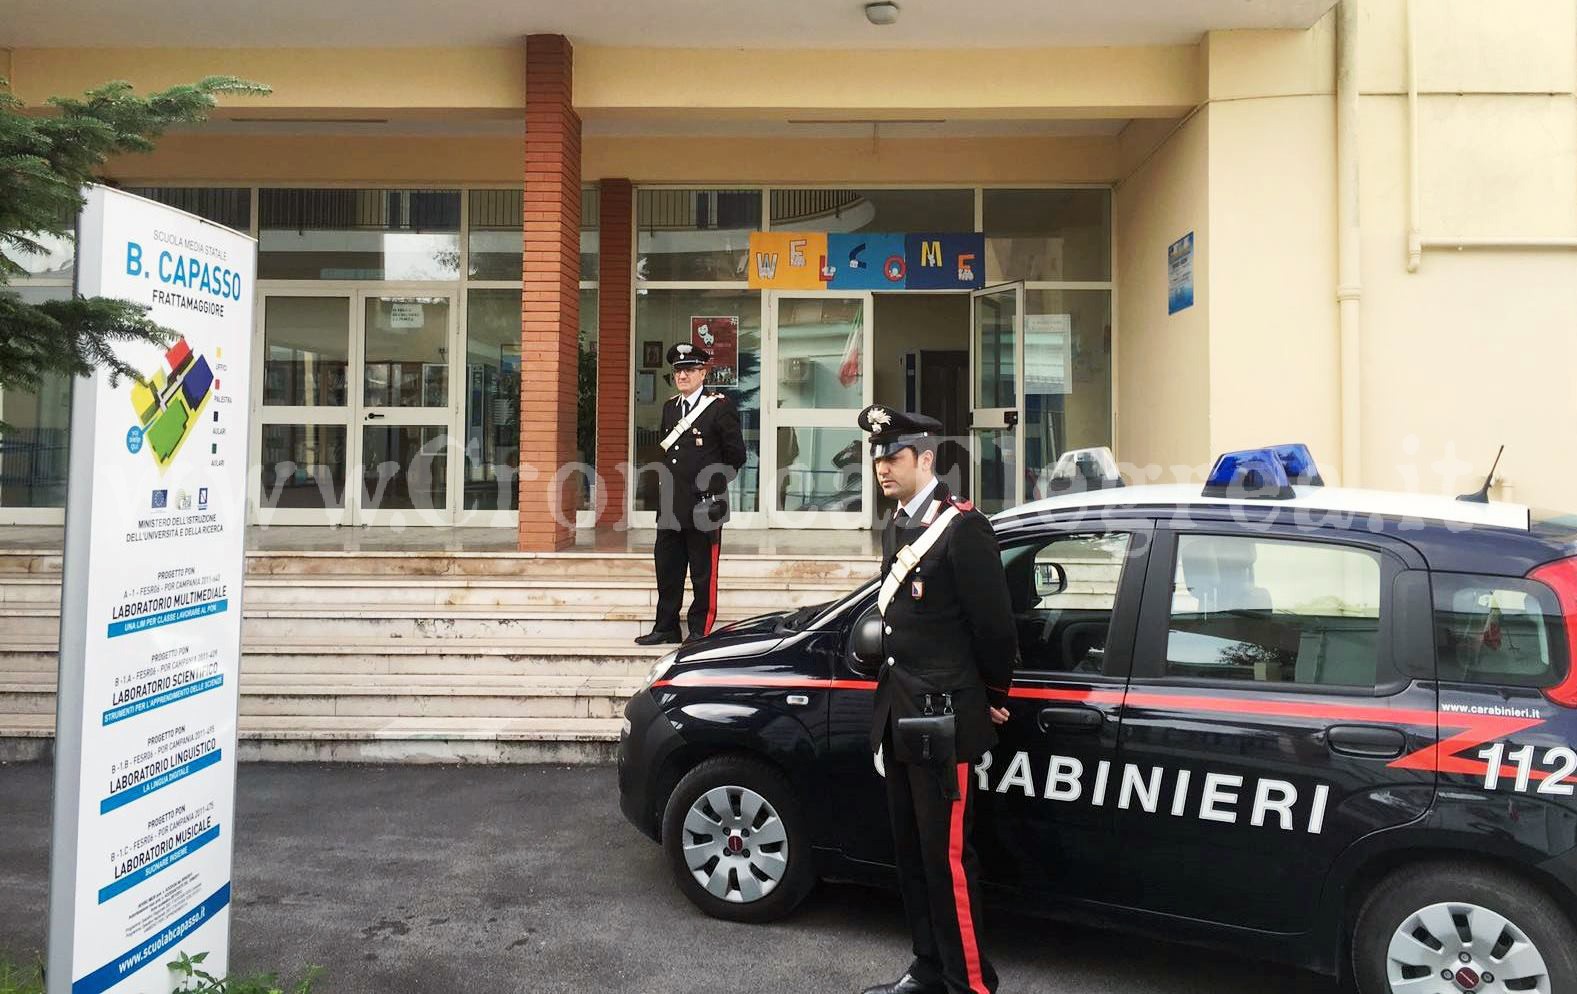 Rubano a scuola: scoperti e arrestati dai carabinieri